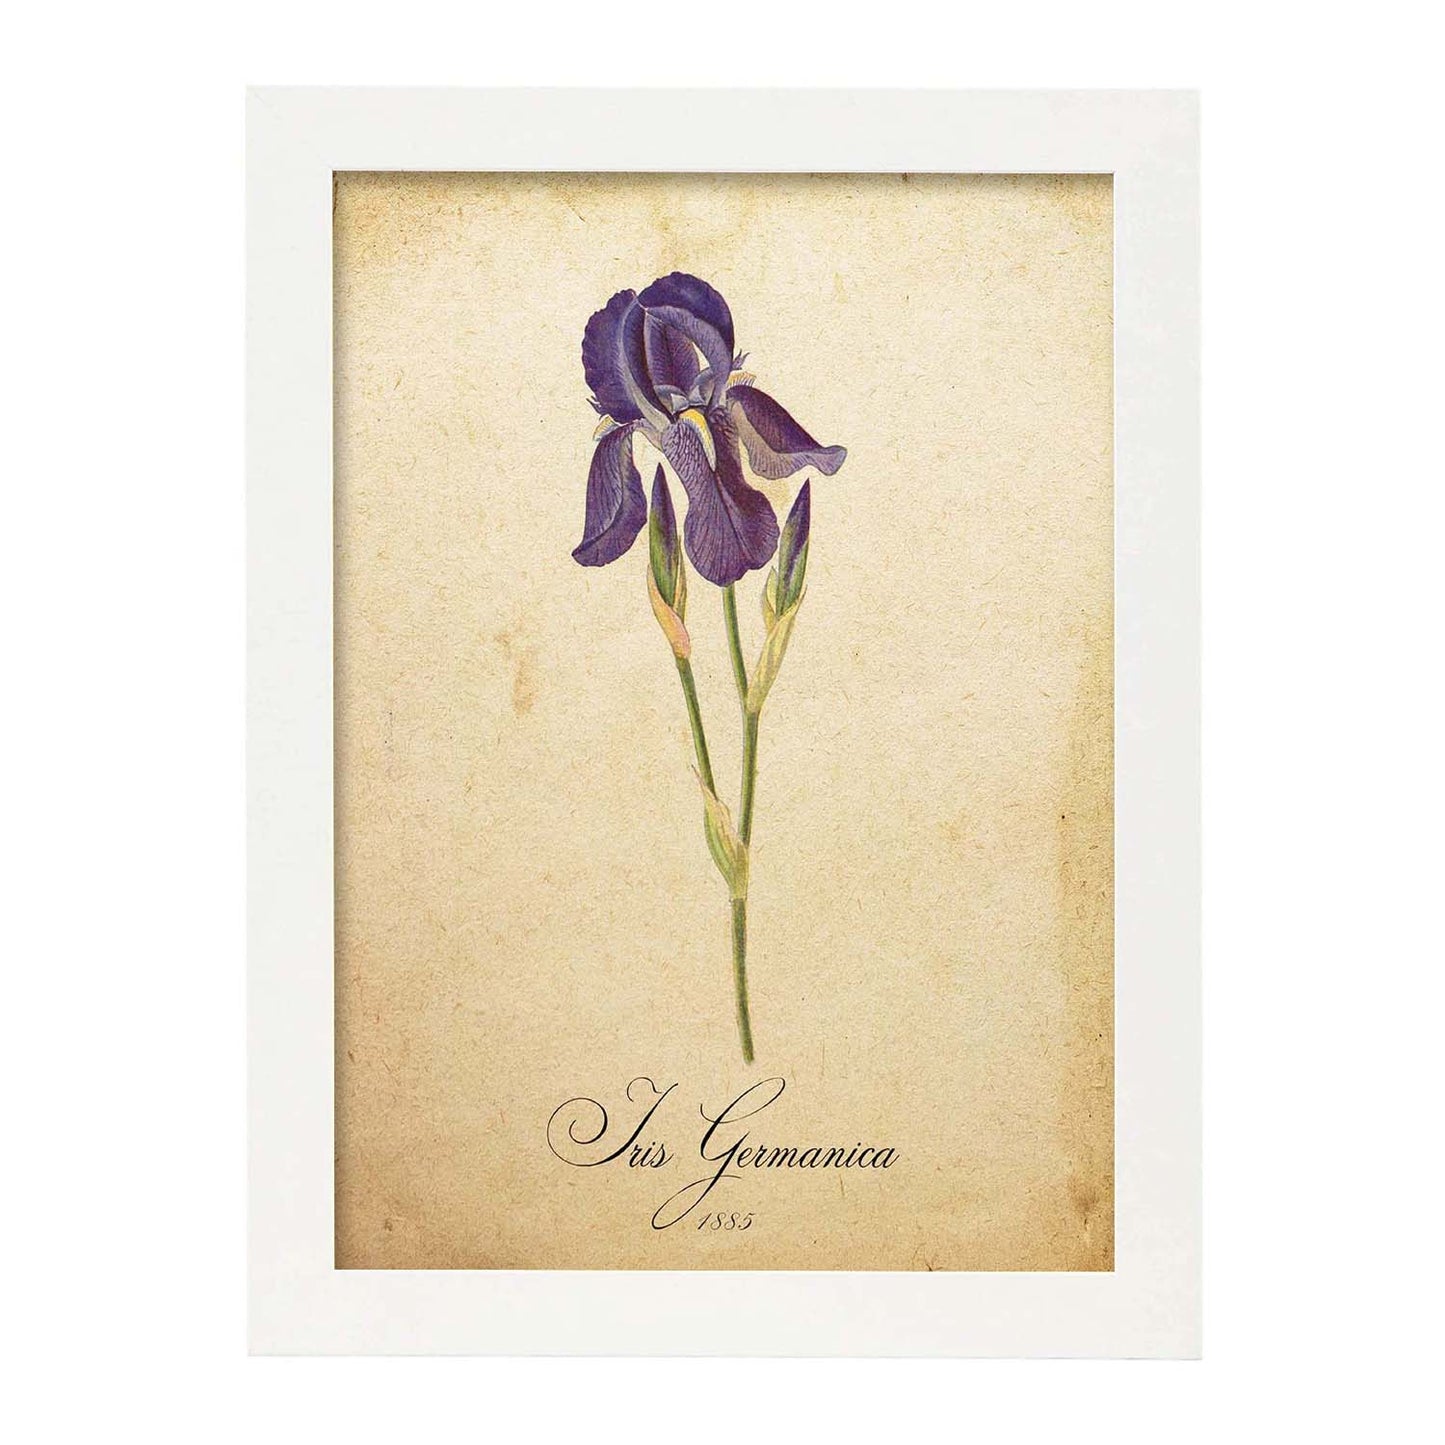 Poster de flores vintage. Lámina Iris germanica con diseño vintage.-Artwork-Nacnic-A4-Marco Blanco-Nacnic Estudio SL